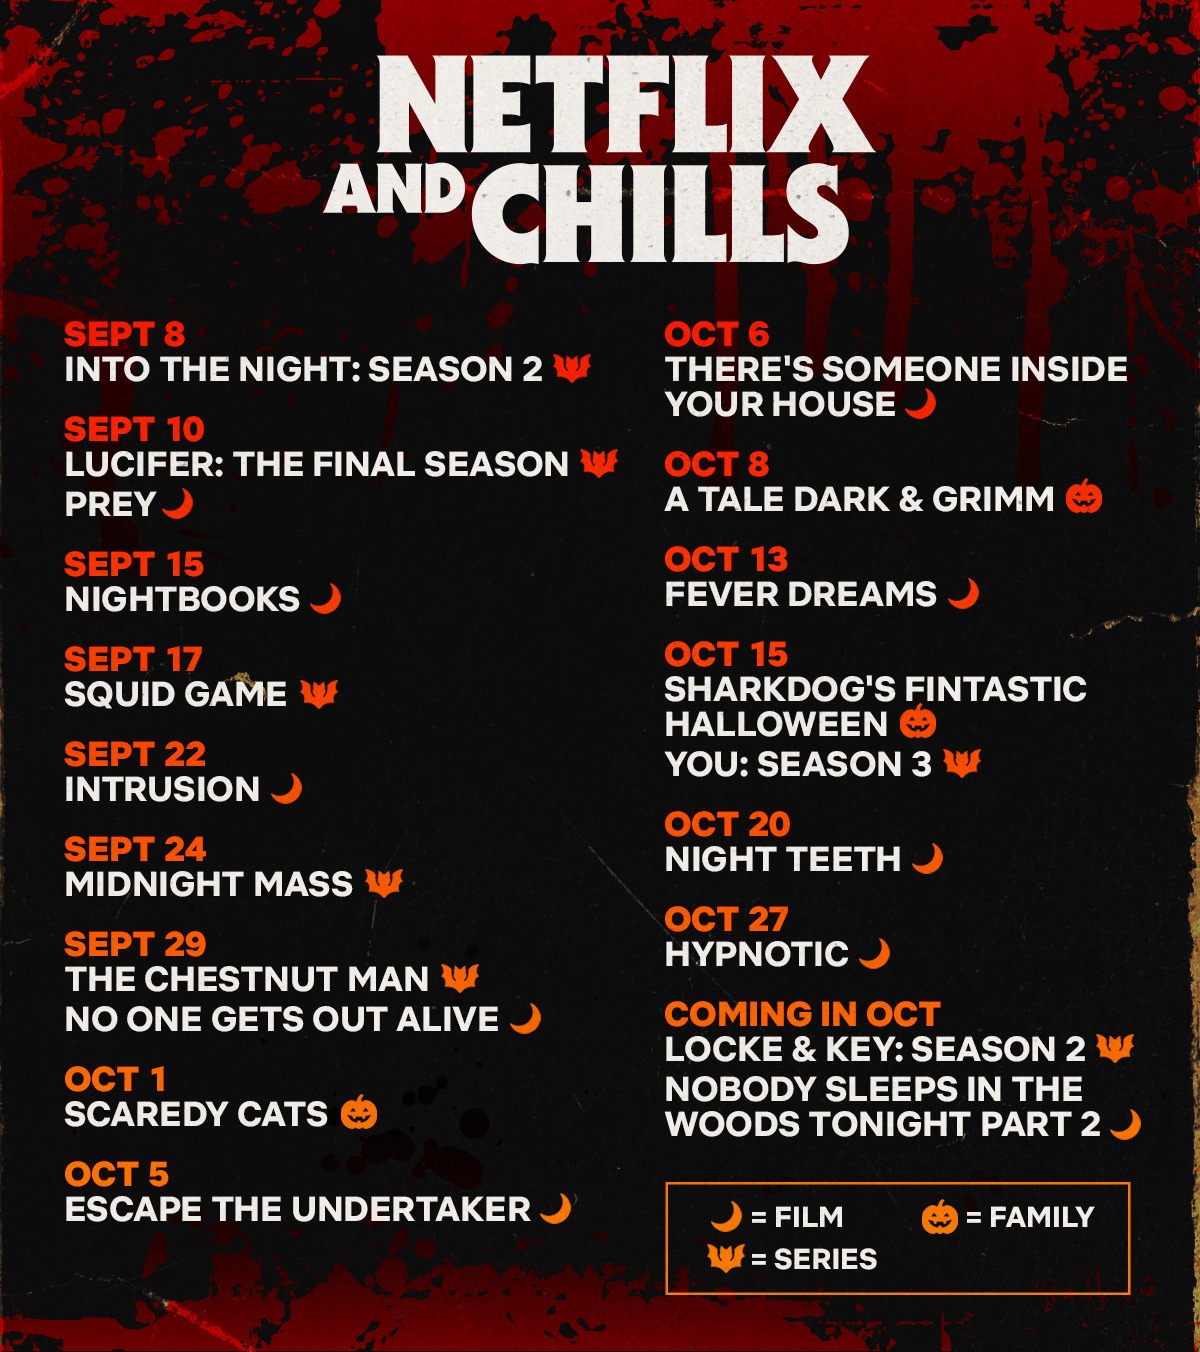 Netflix Chills  - Netflix and Chills : ce que Netflix vous réserve pour Halloween (Sorties Septembre et Octobre 2021)